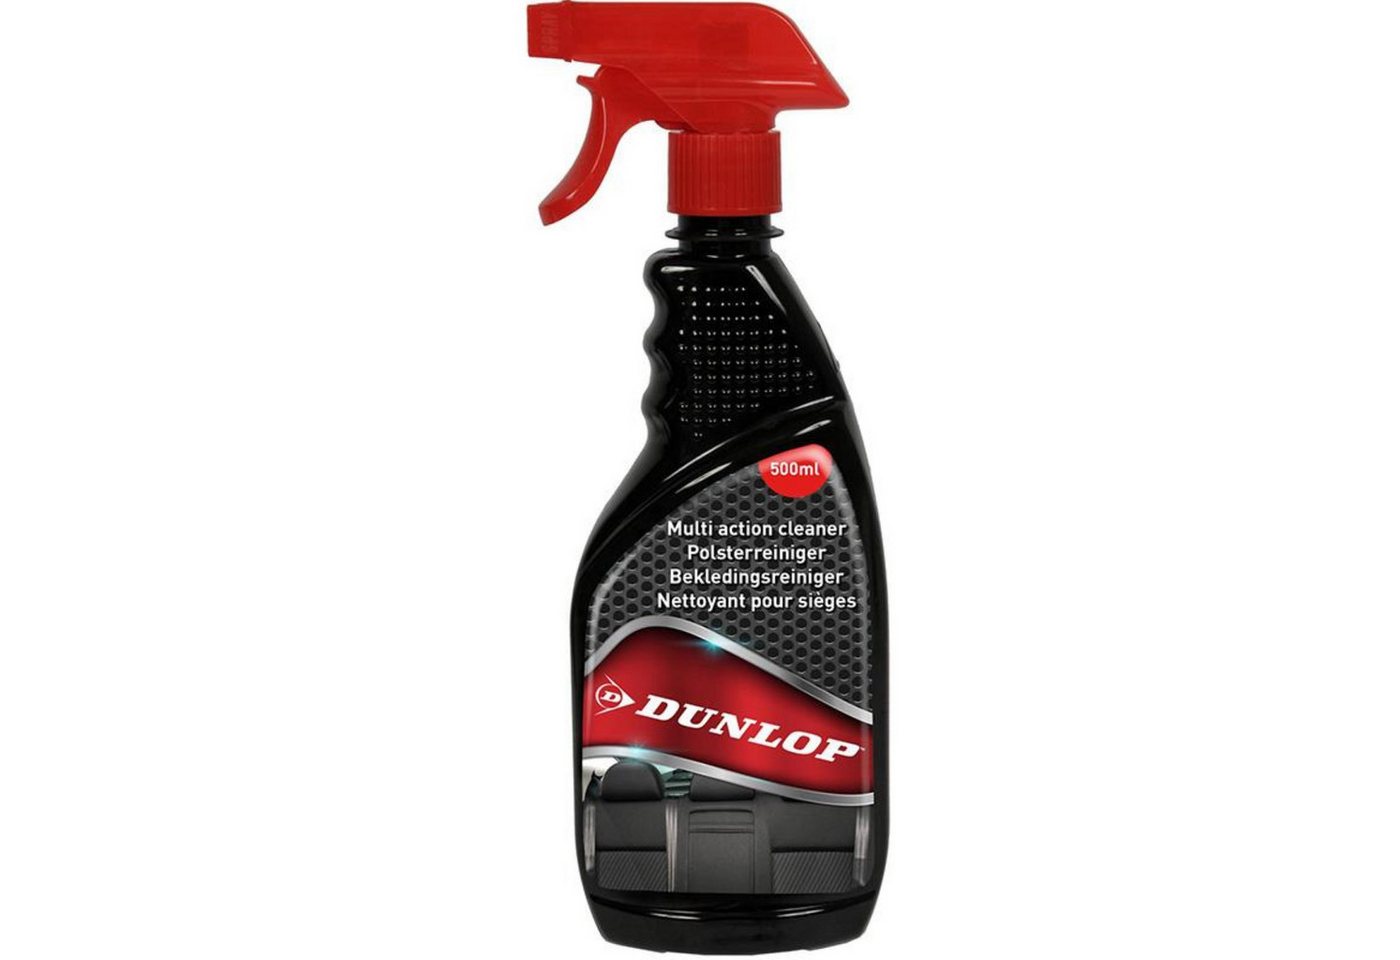 Dunlop - Textil-Polsterreiniger Reinigungsmittel Autopflegemittel 500 ml Polsterreiniger von Dunlop